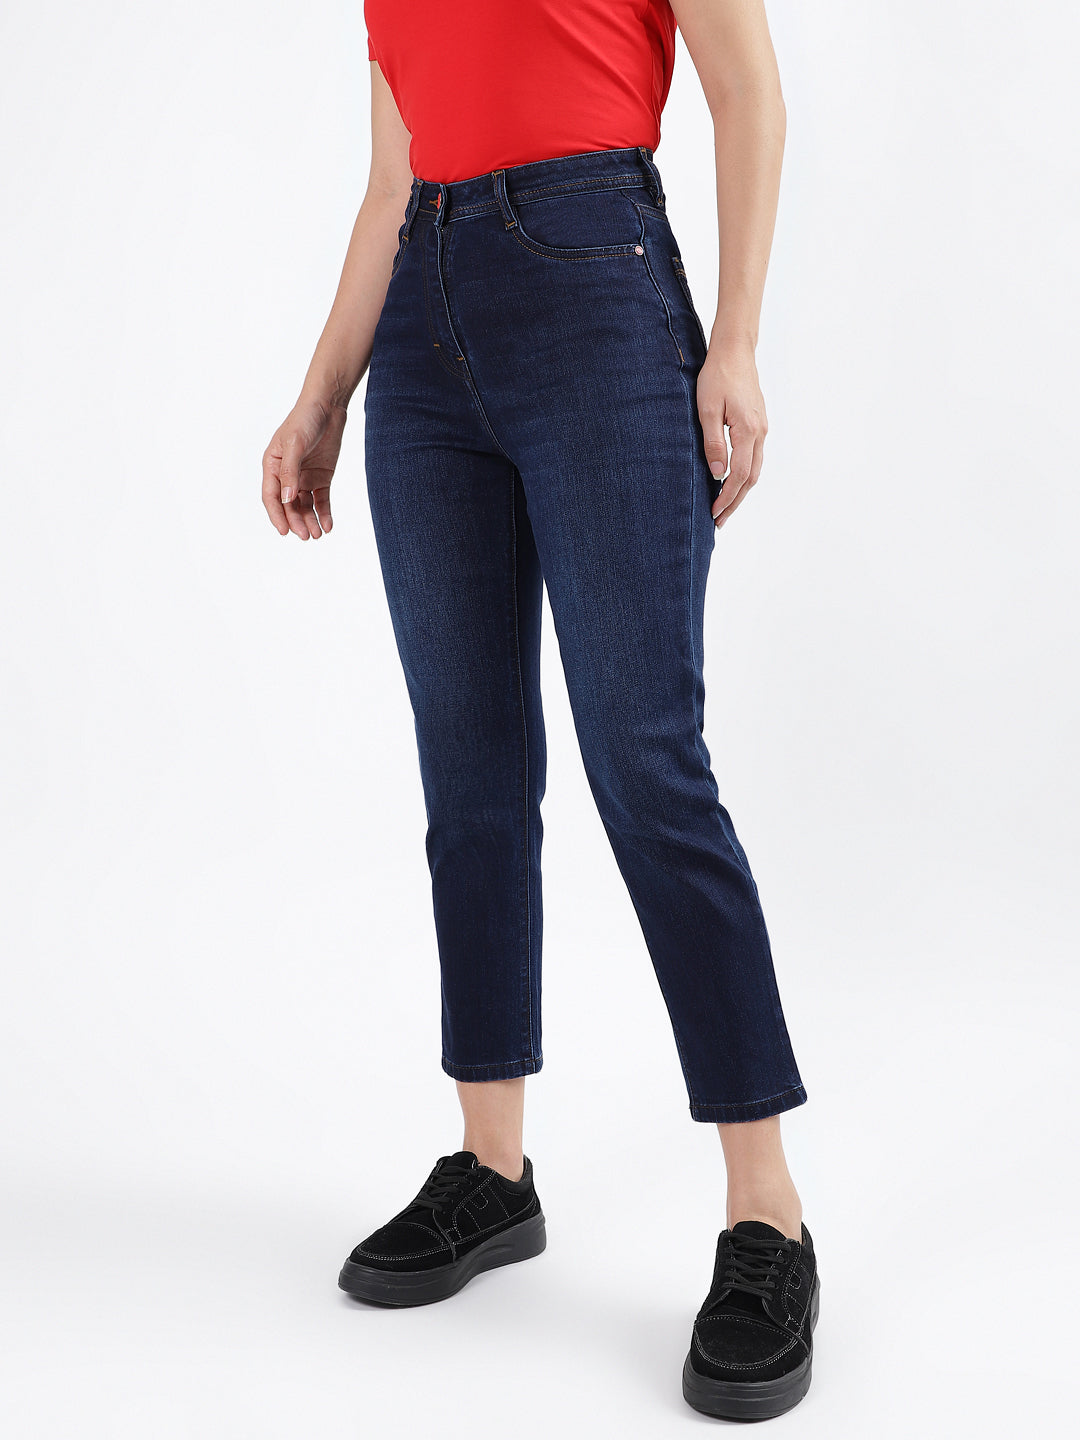 Jeans - Light Blue Denim Jeans for women 7586